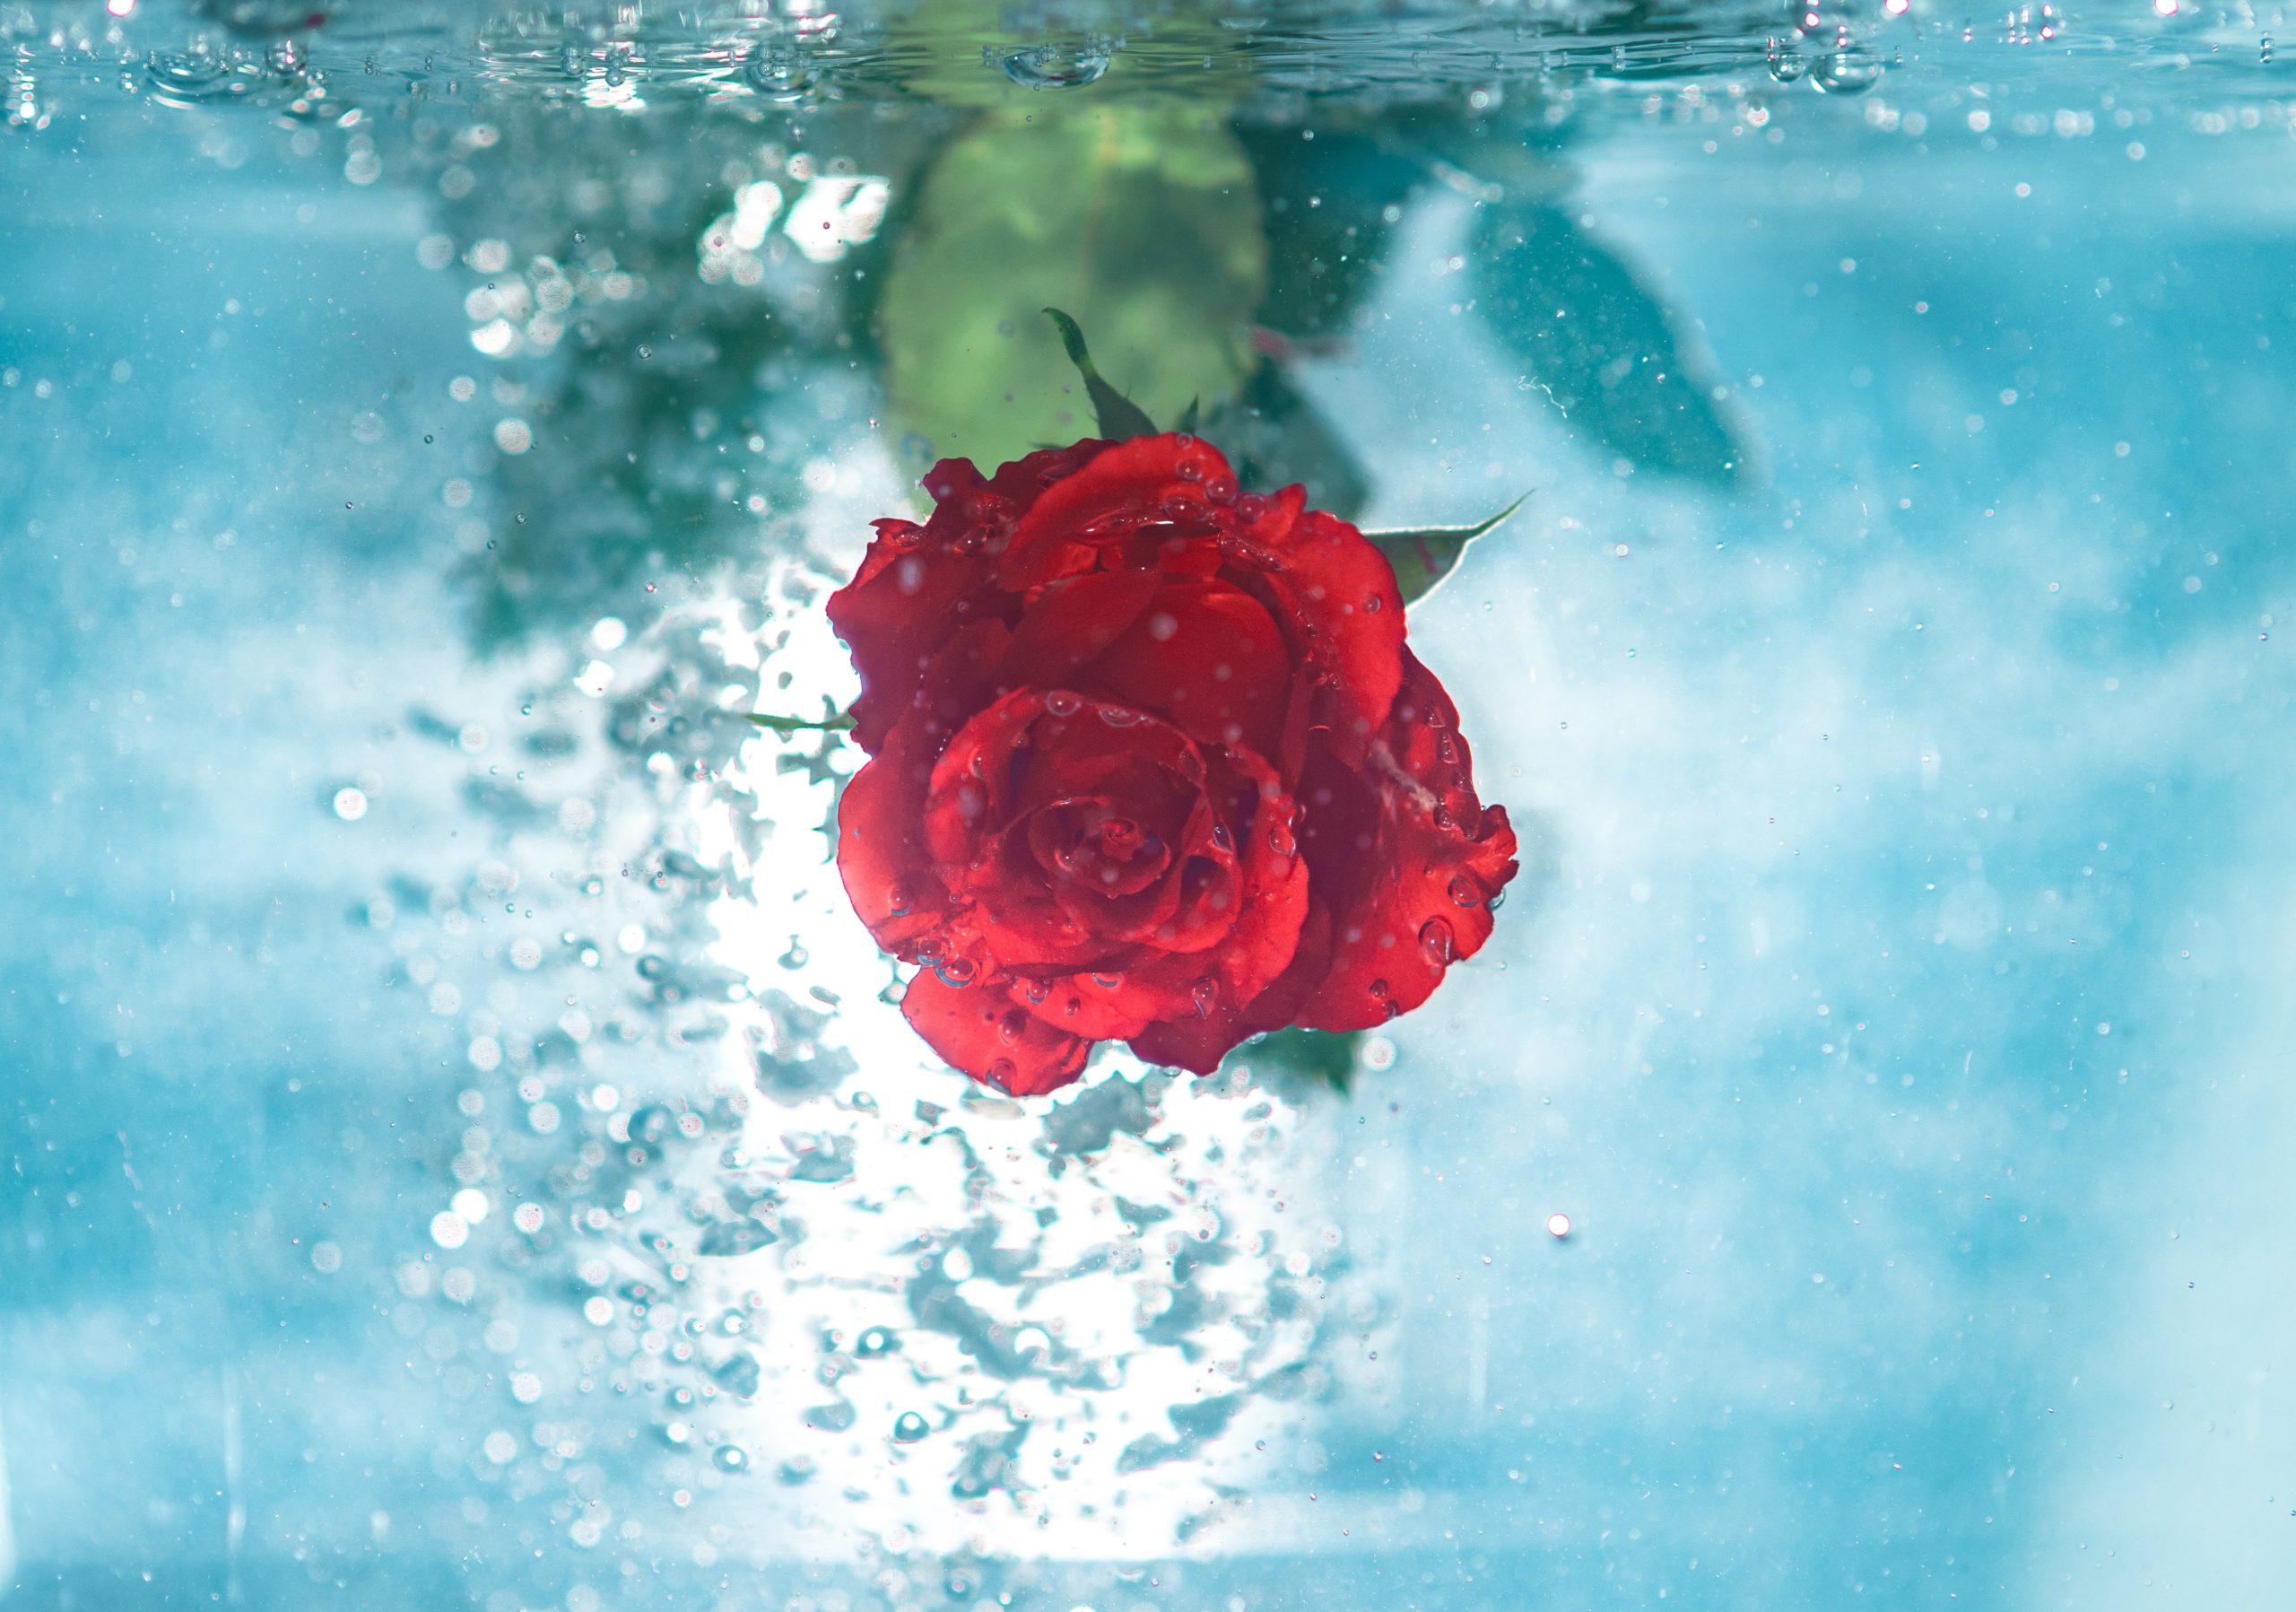 jamie-street-rose underwater